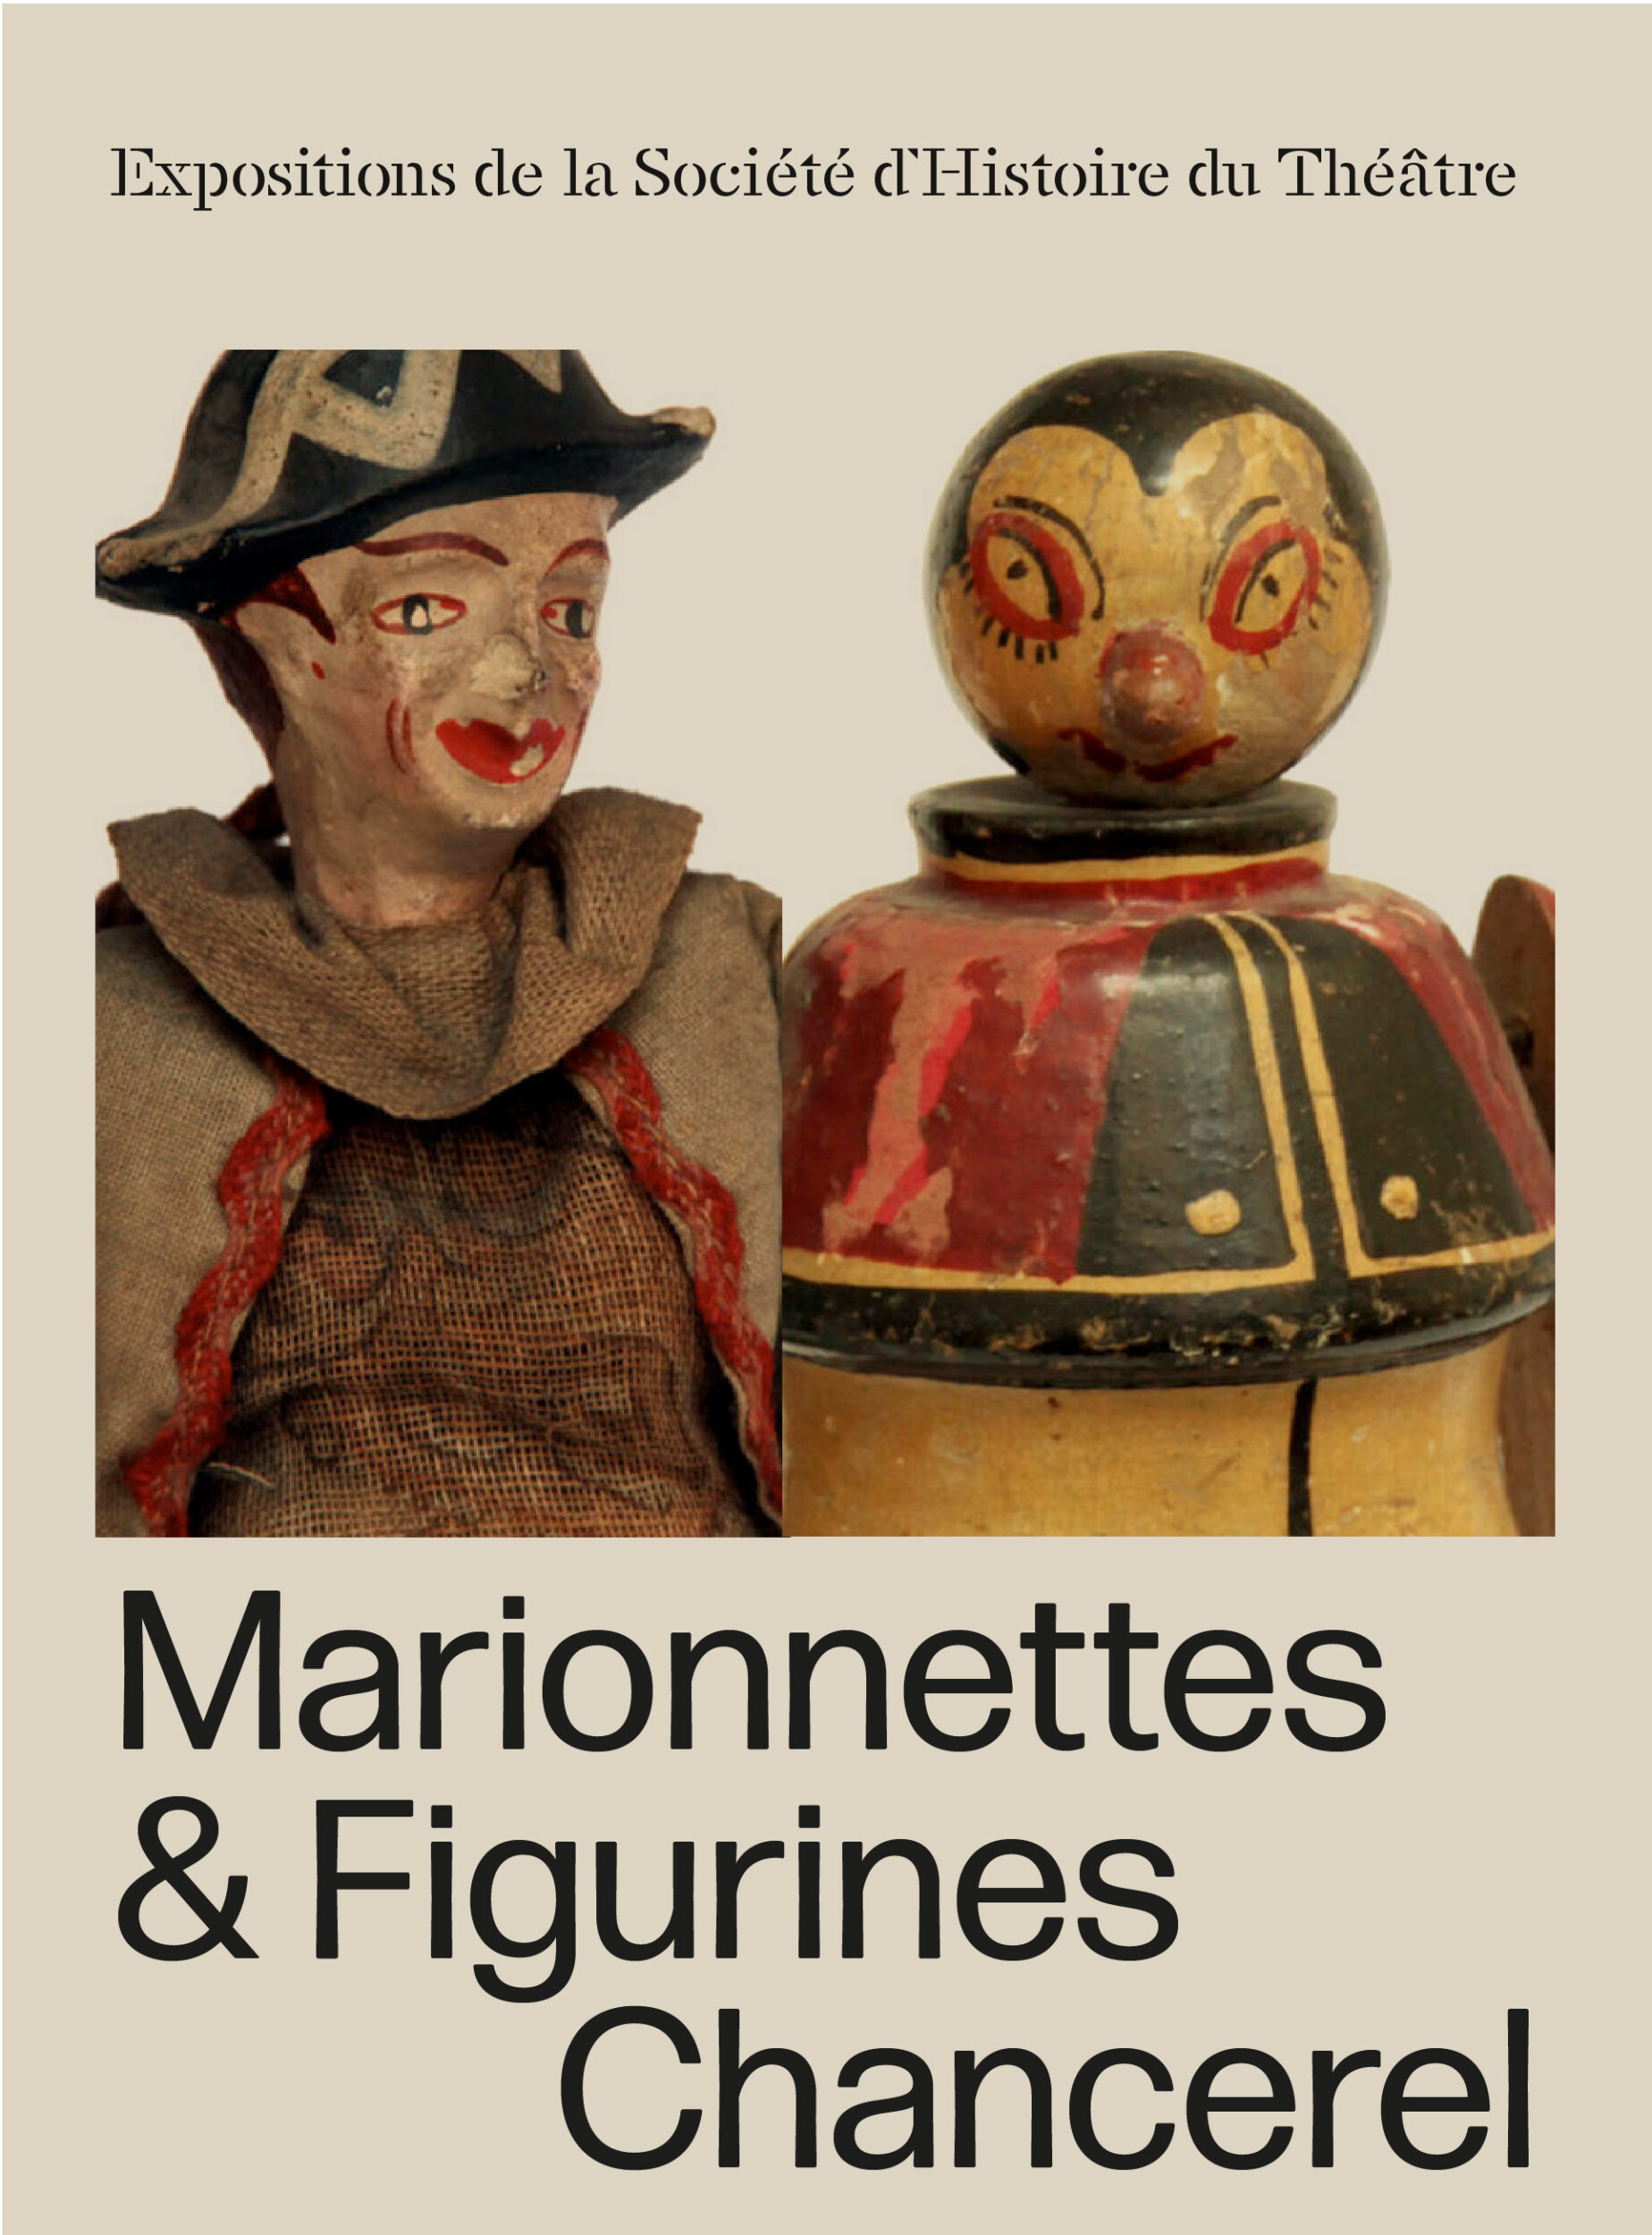 Marionnettes & figurines fonds SHT